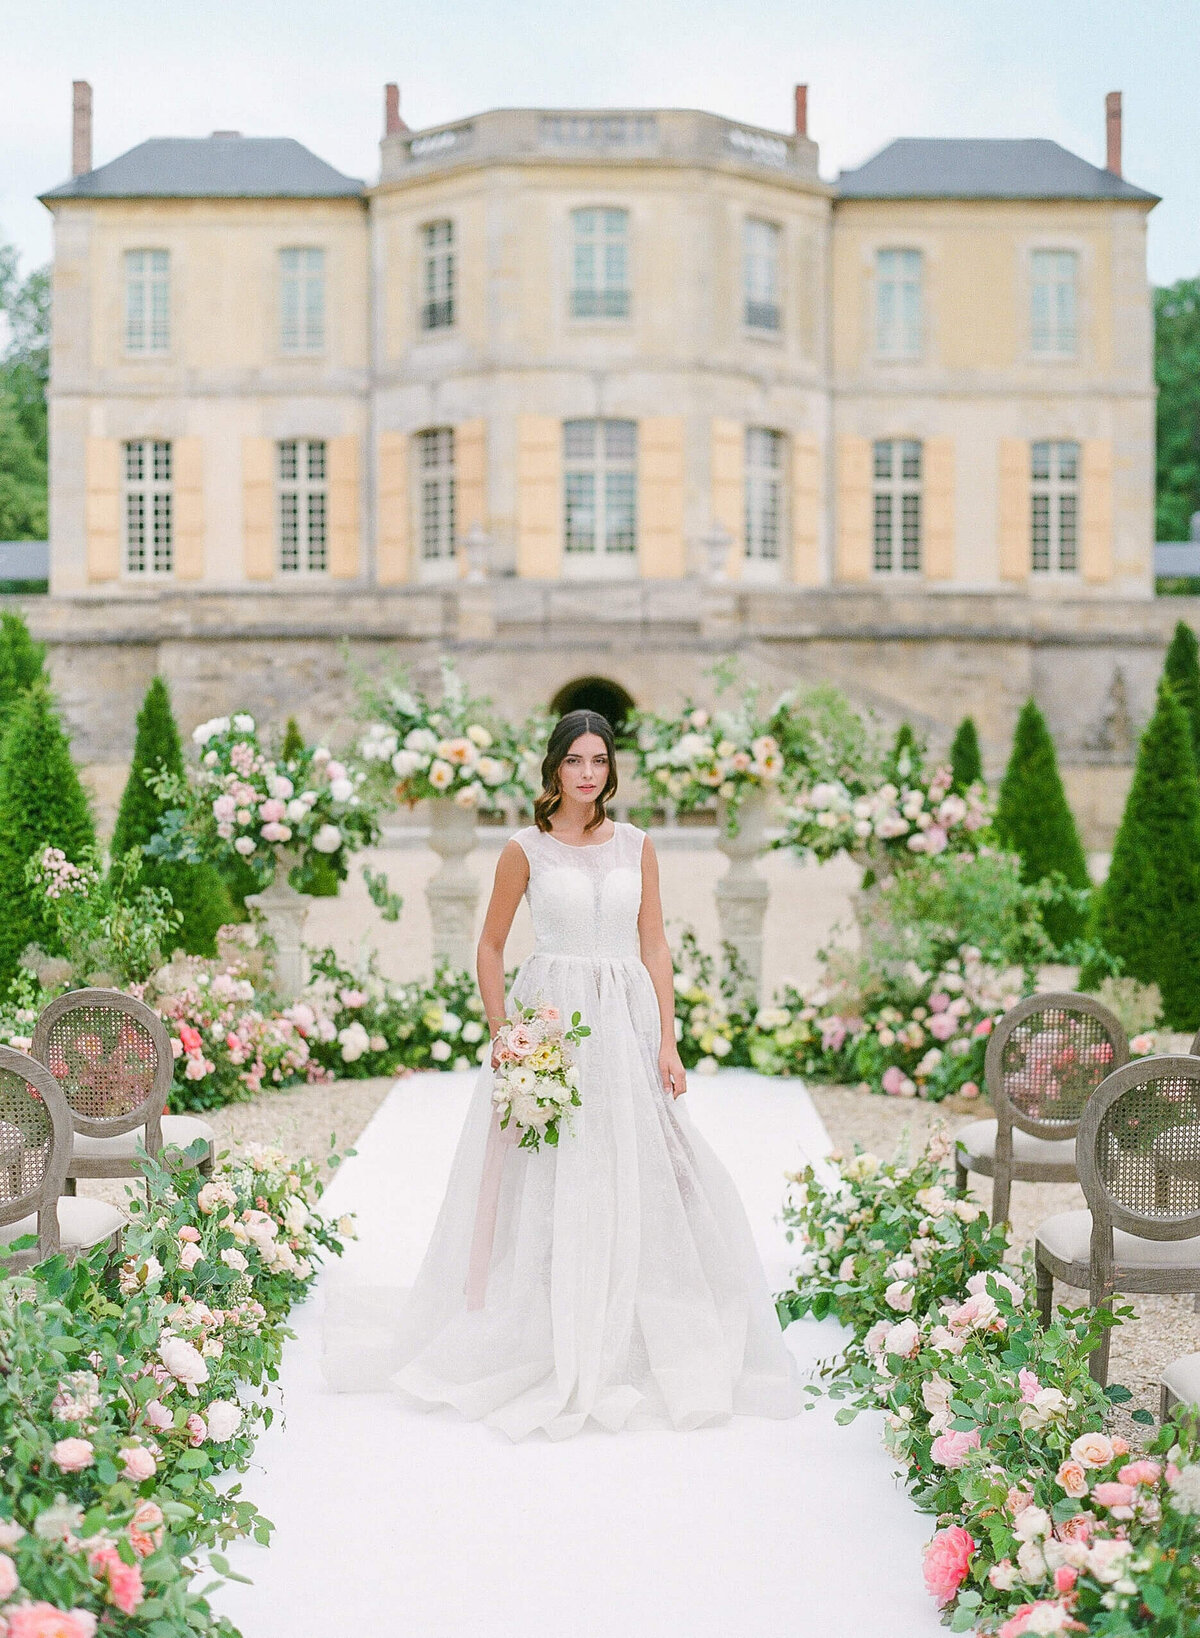 Chateau-de-Villette-wedding-florist-Floraison24